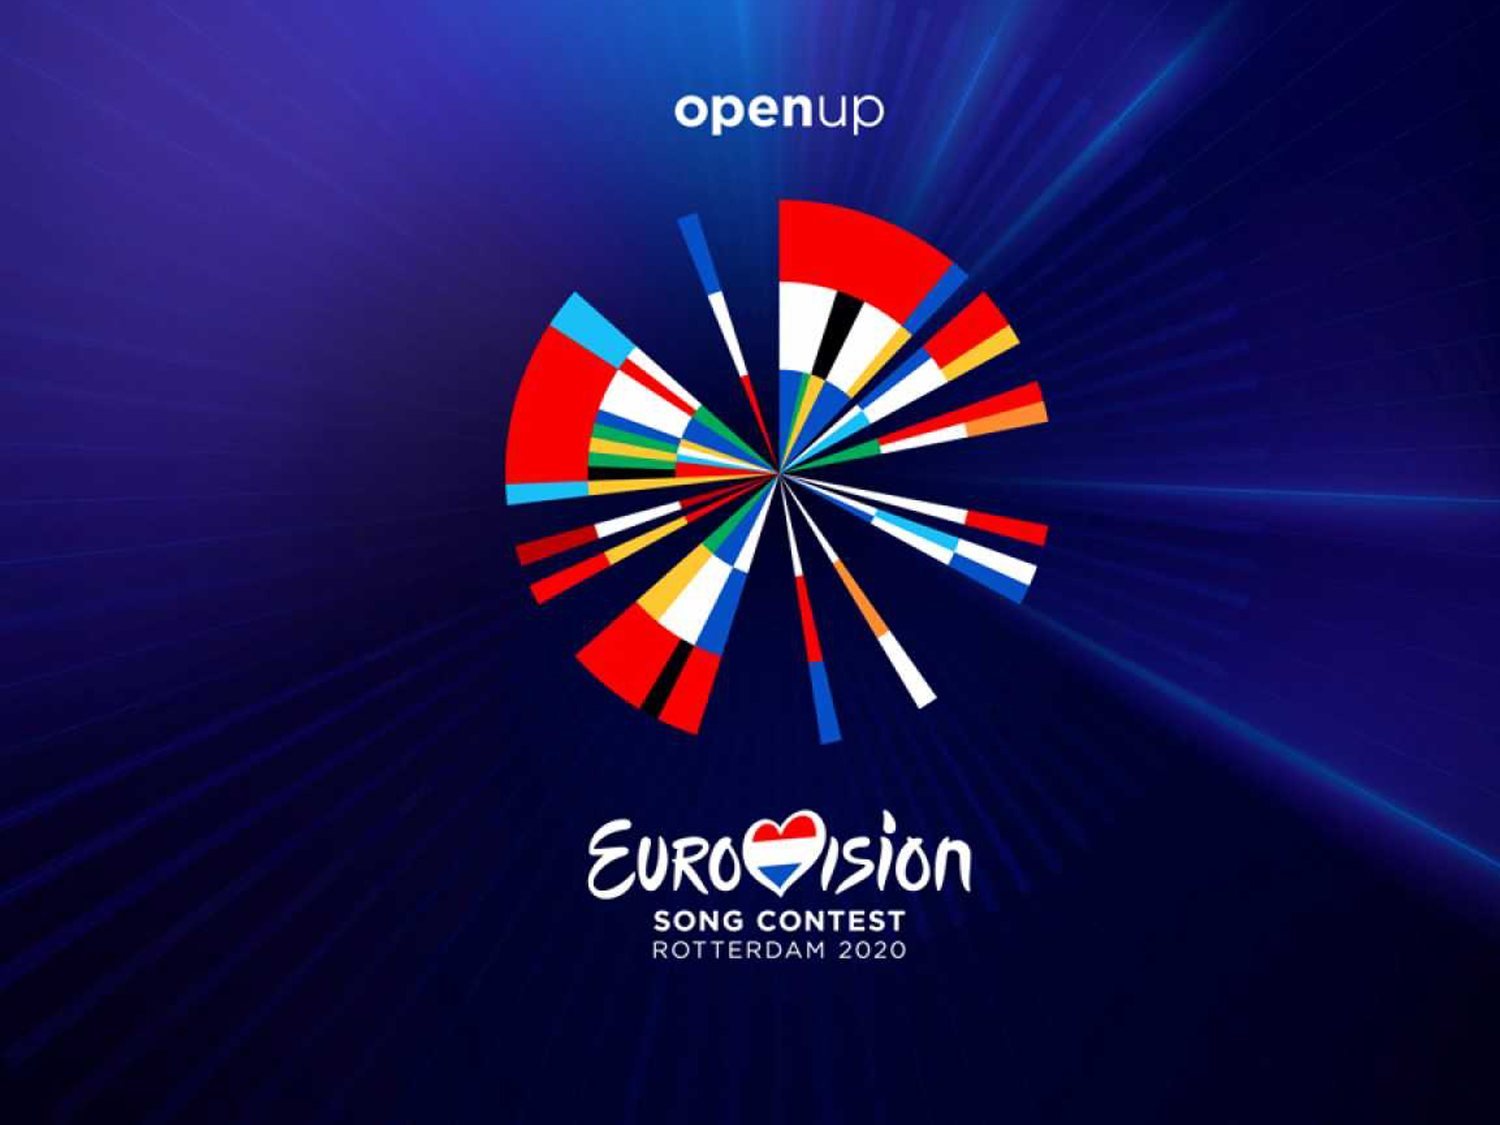 La UER confirma que las canciones de Eurovisión 2020 no podrán ser elegidas en 2021